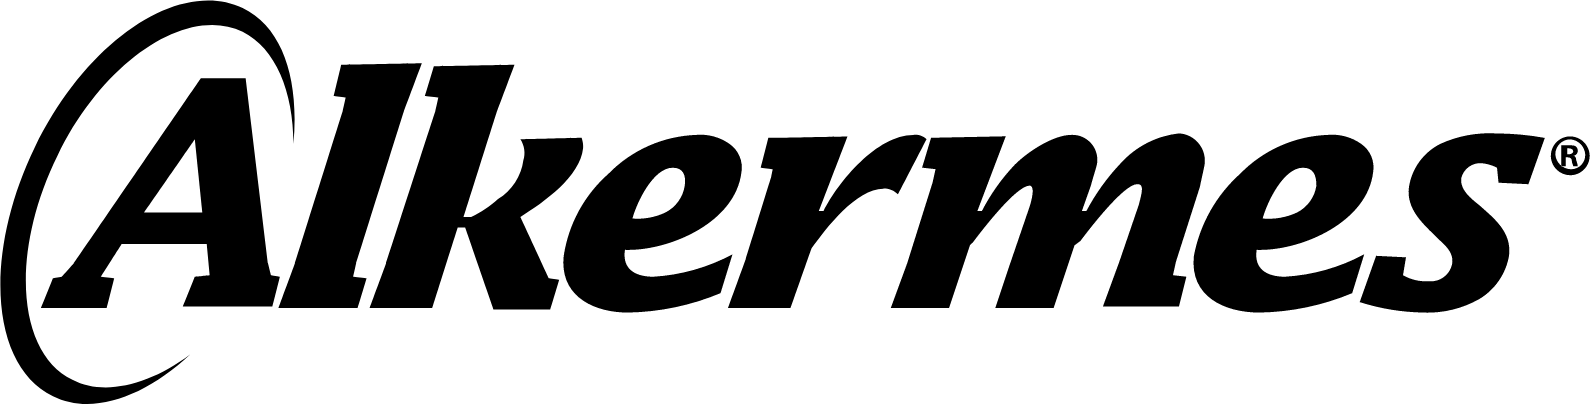 Alkermes logo large (transparent PNG)